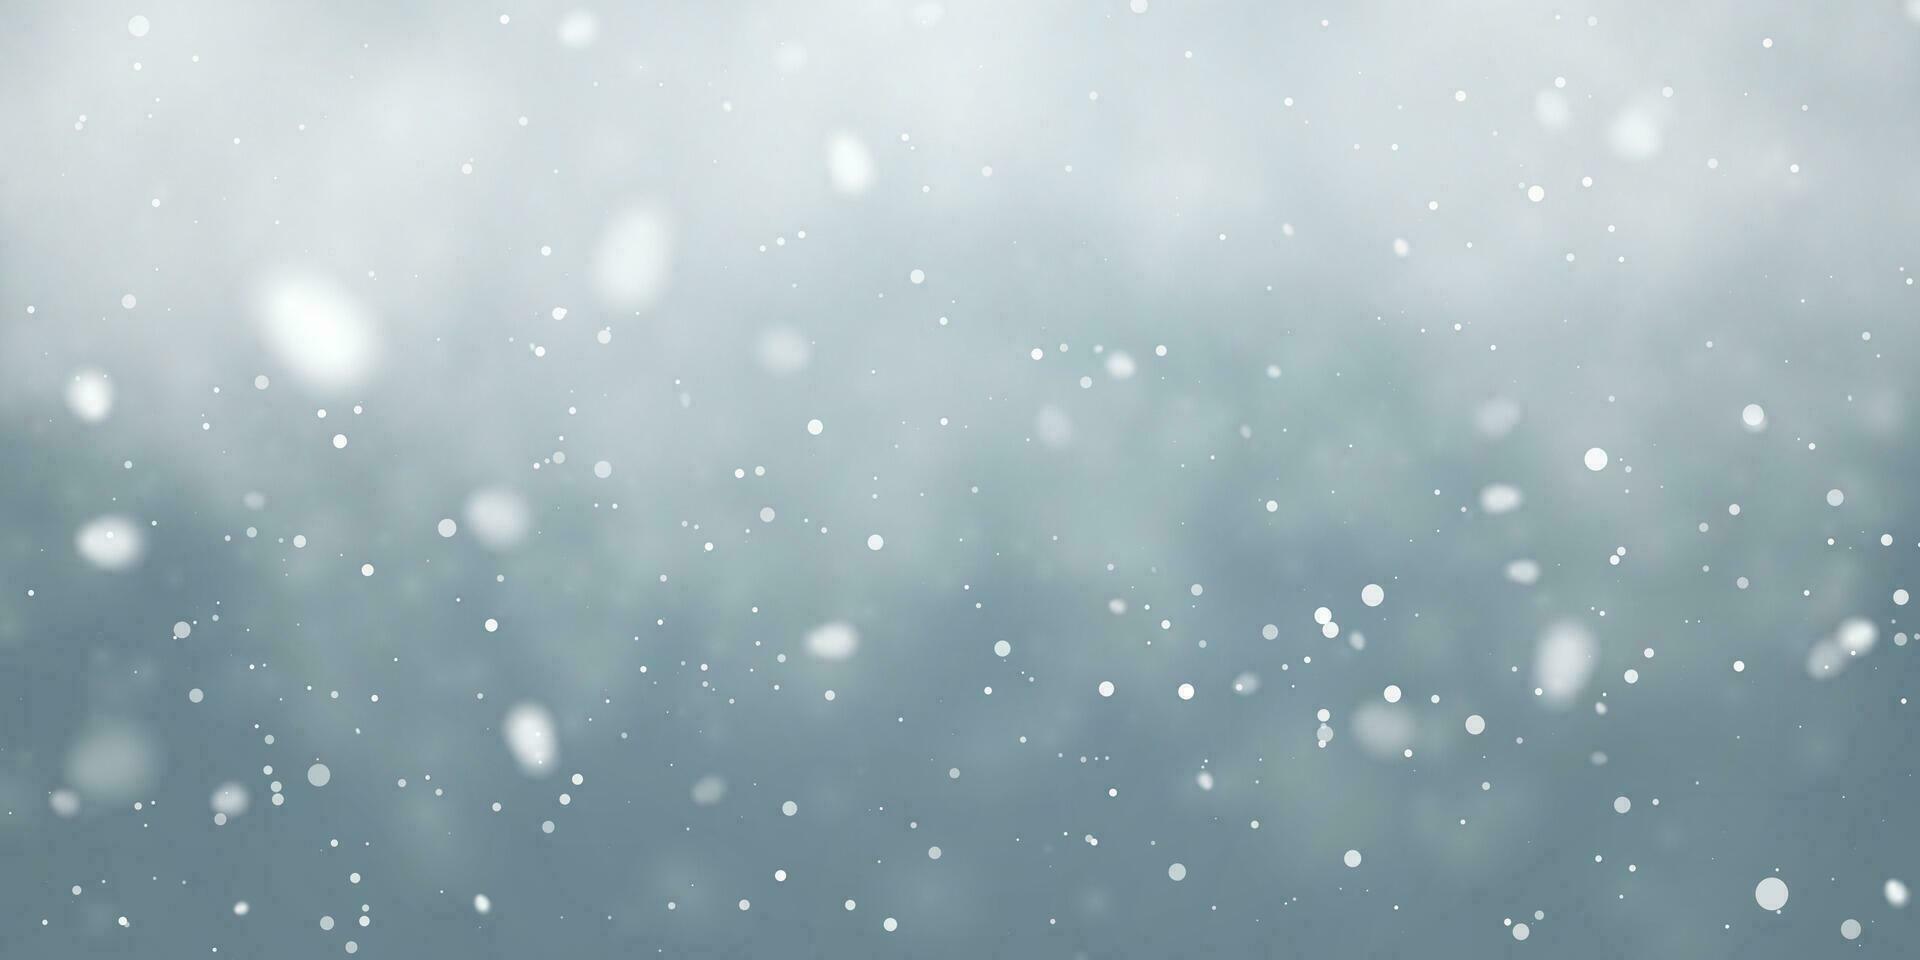 Kerstmis sneeuw. vallend sneeuwvlokken Aan blauw achtergrond. sneeuwval. vector illustratie